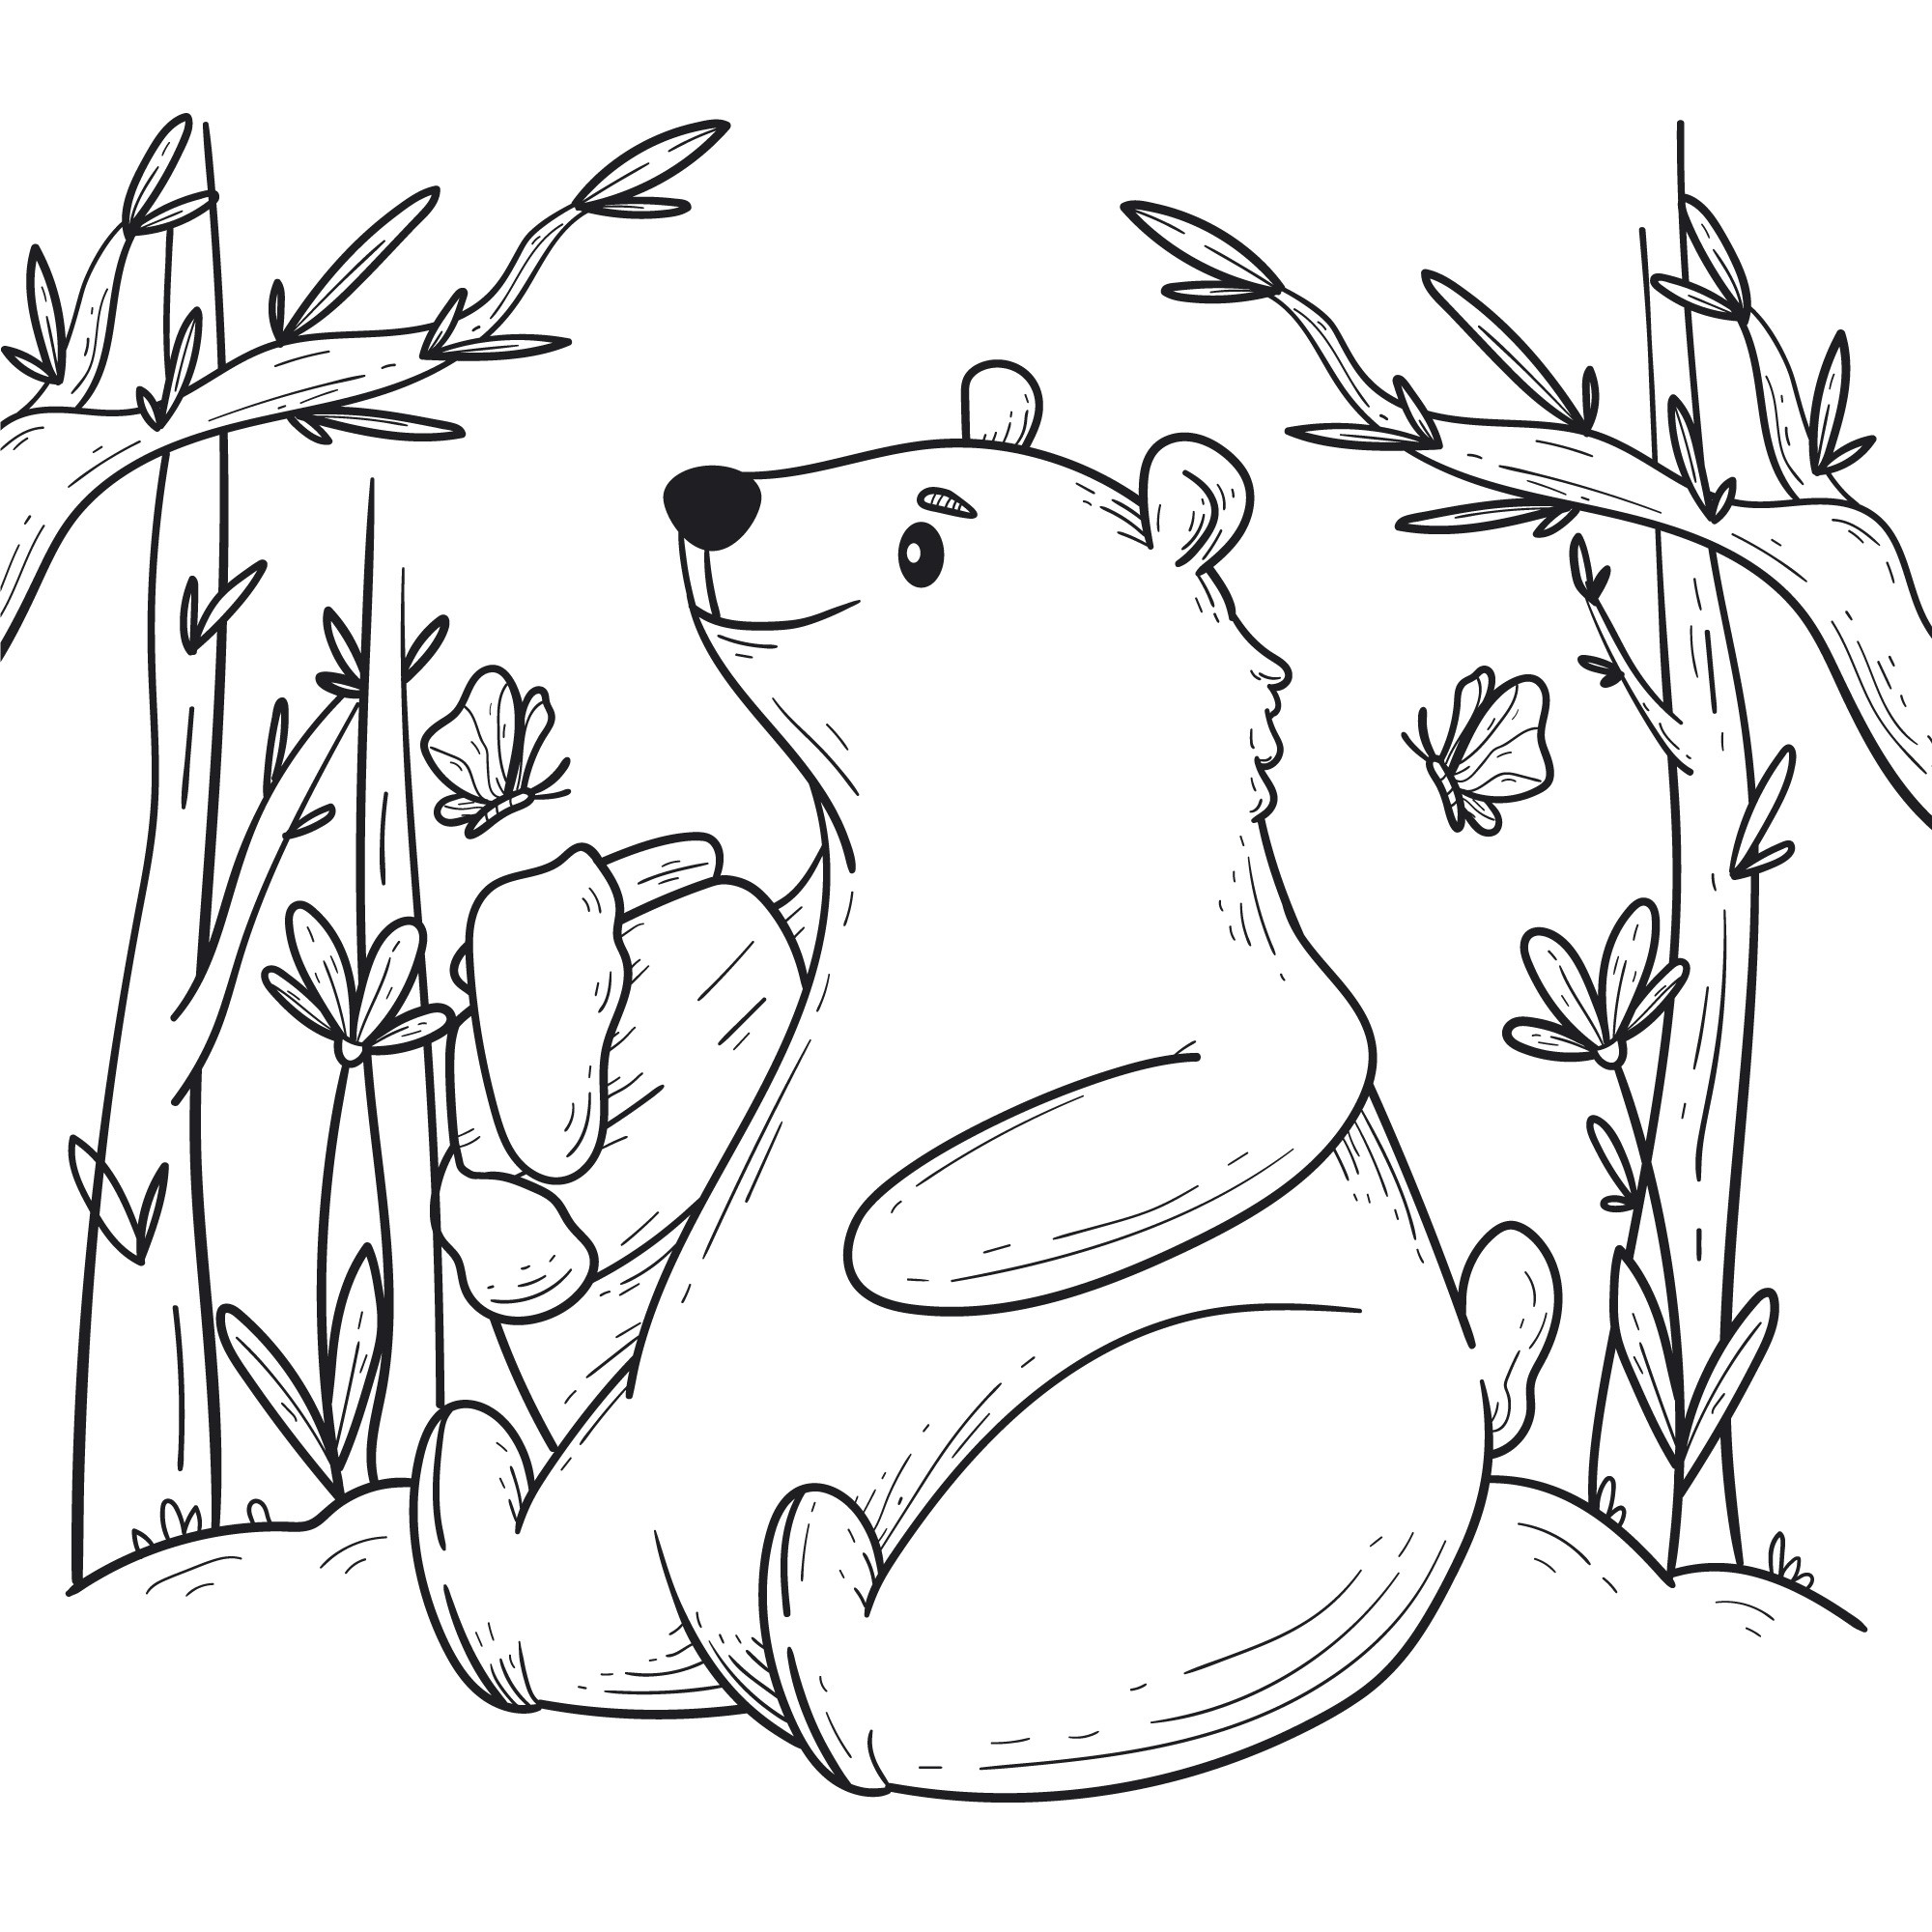 Раскраска для детей: медведь на поляне с бочонком меда